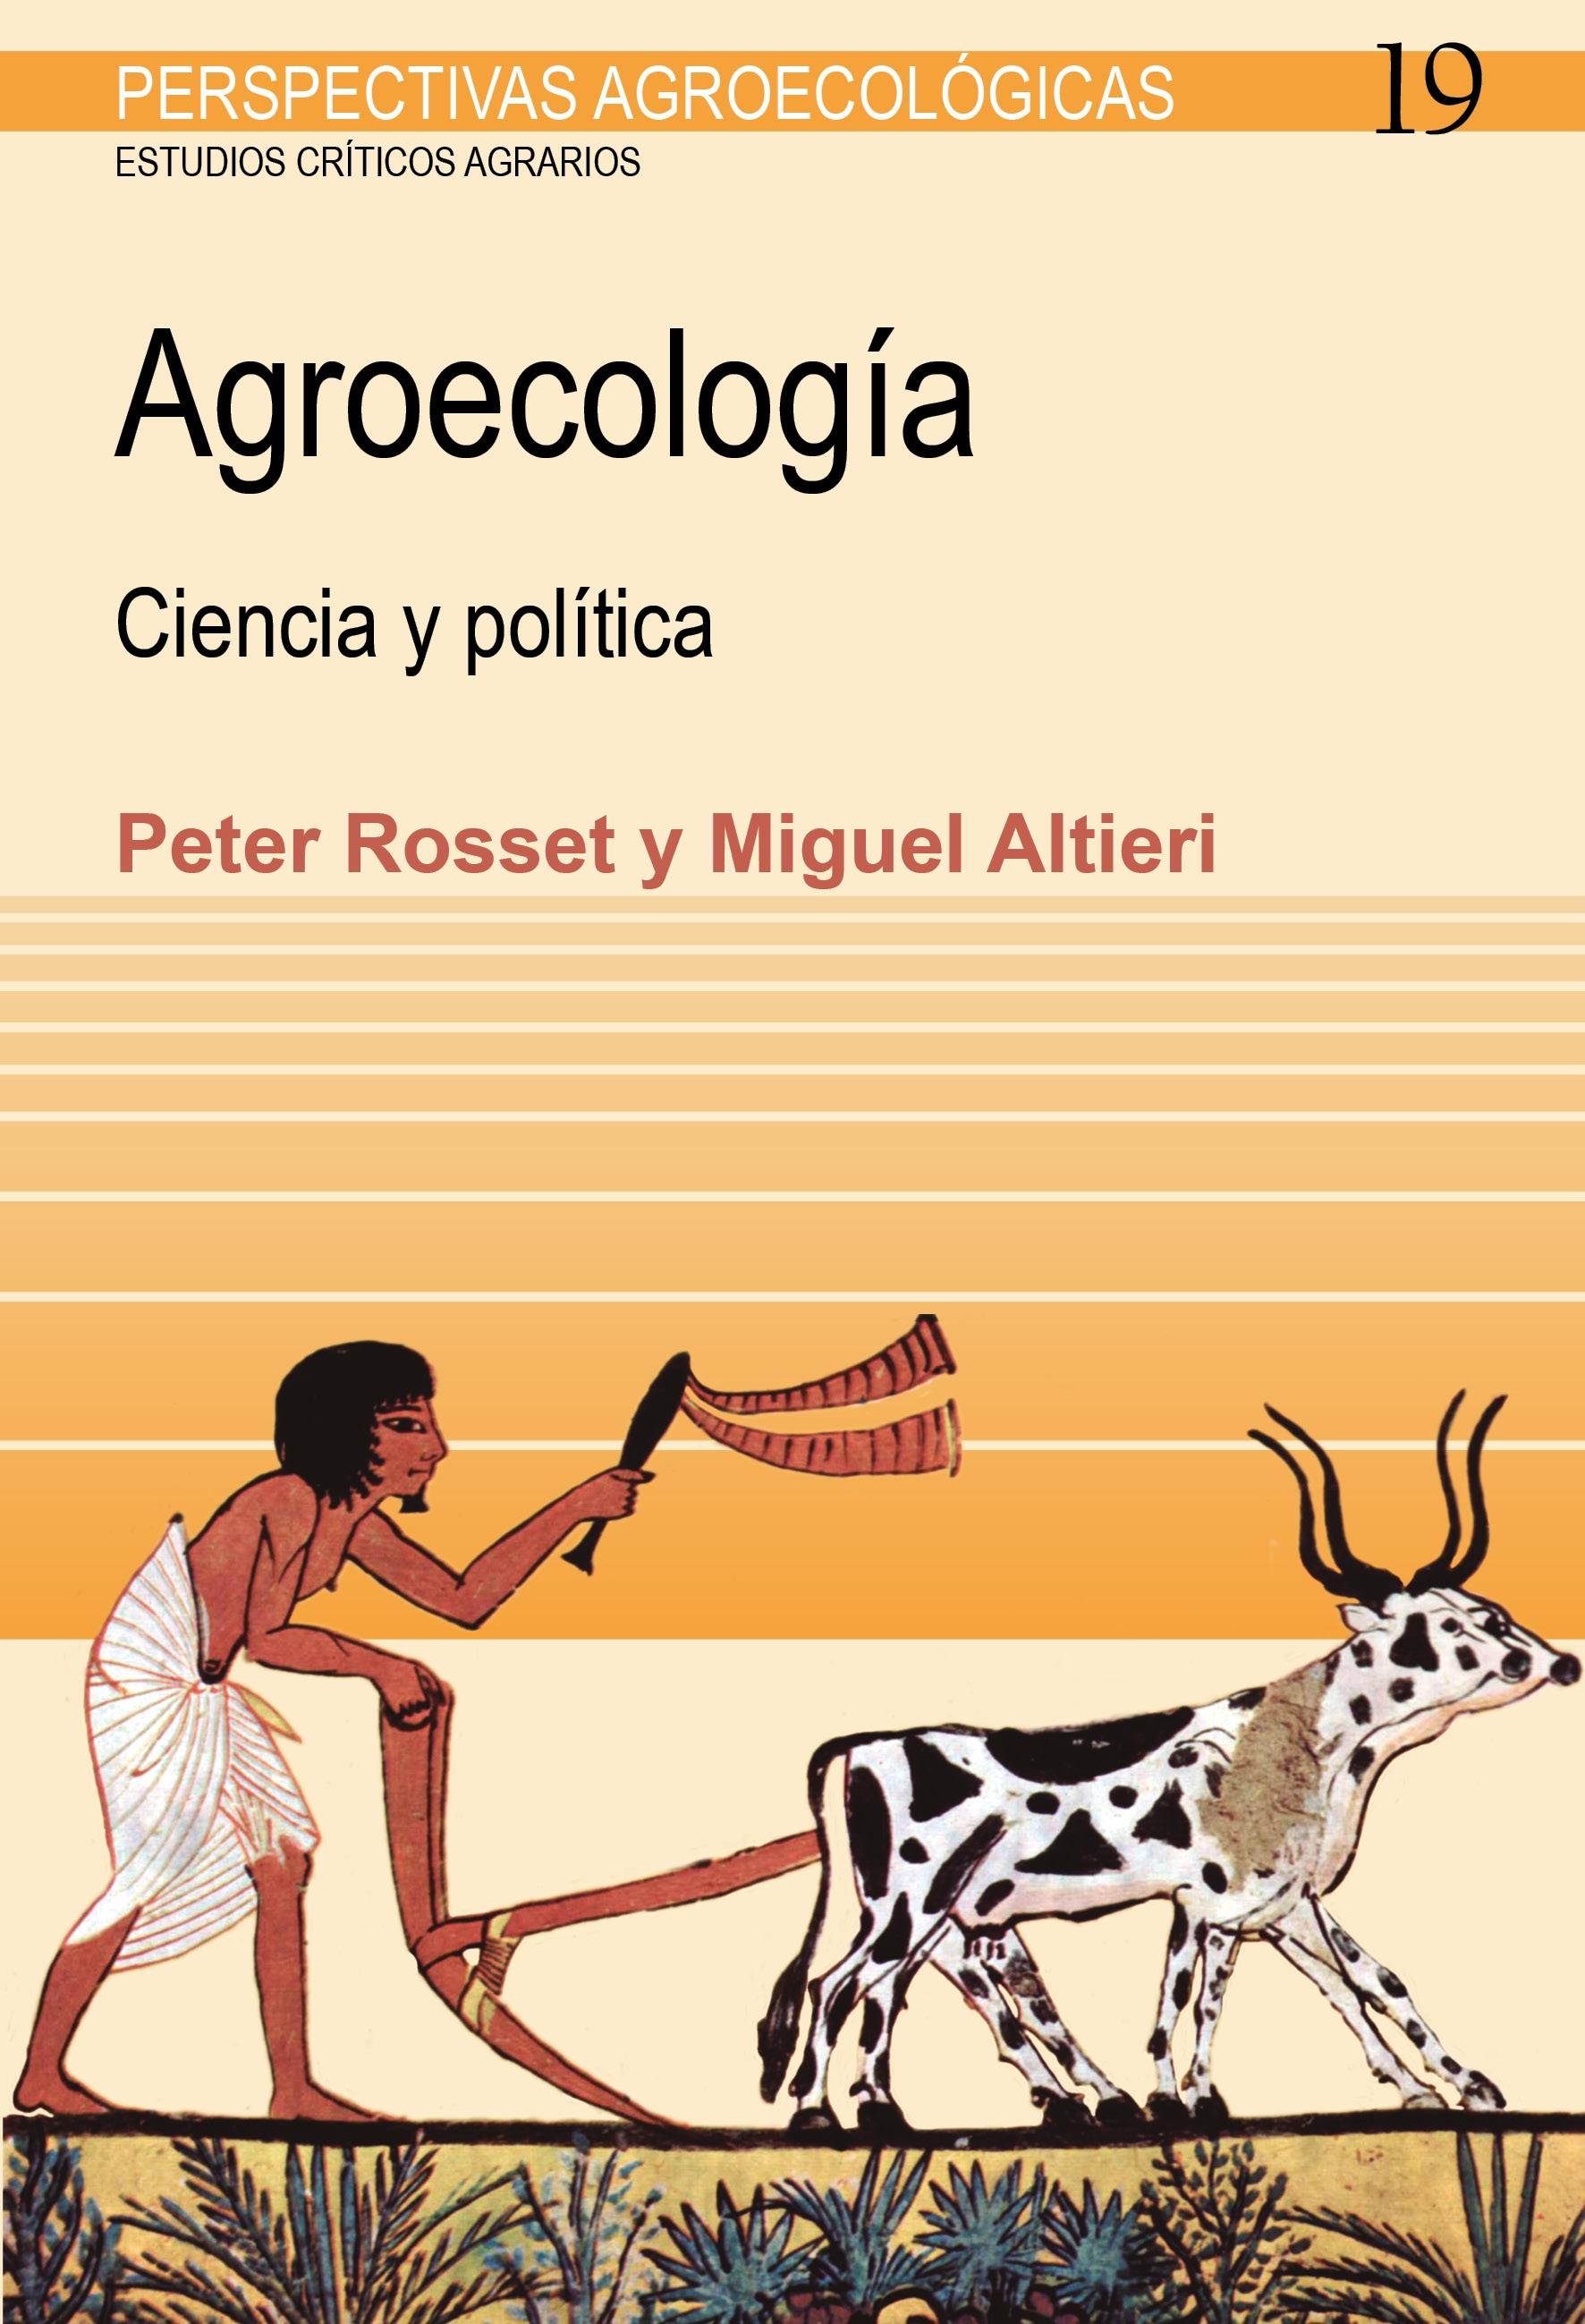 Agroecología "Ciencia y política"